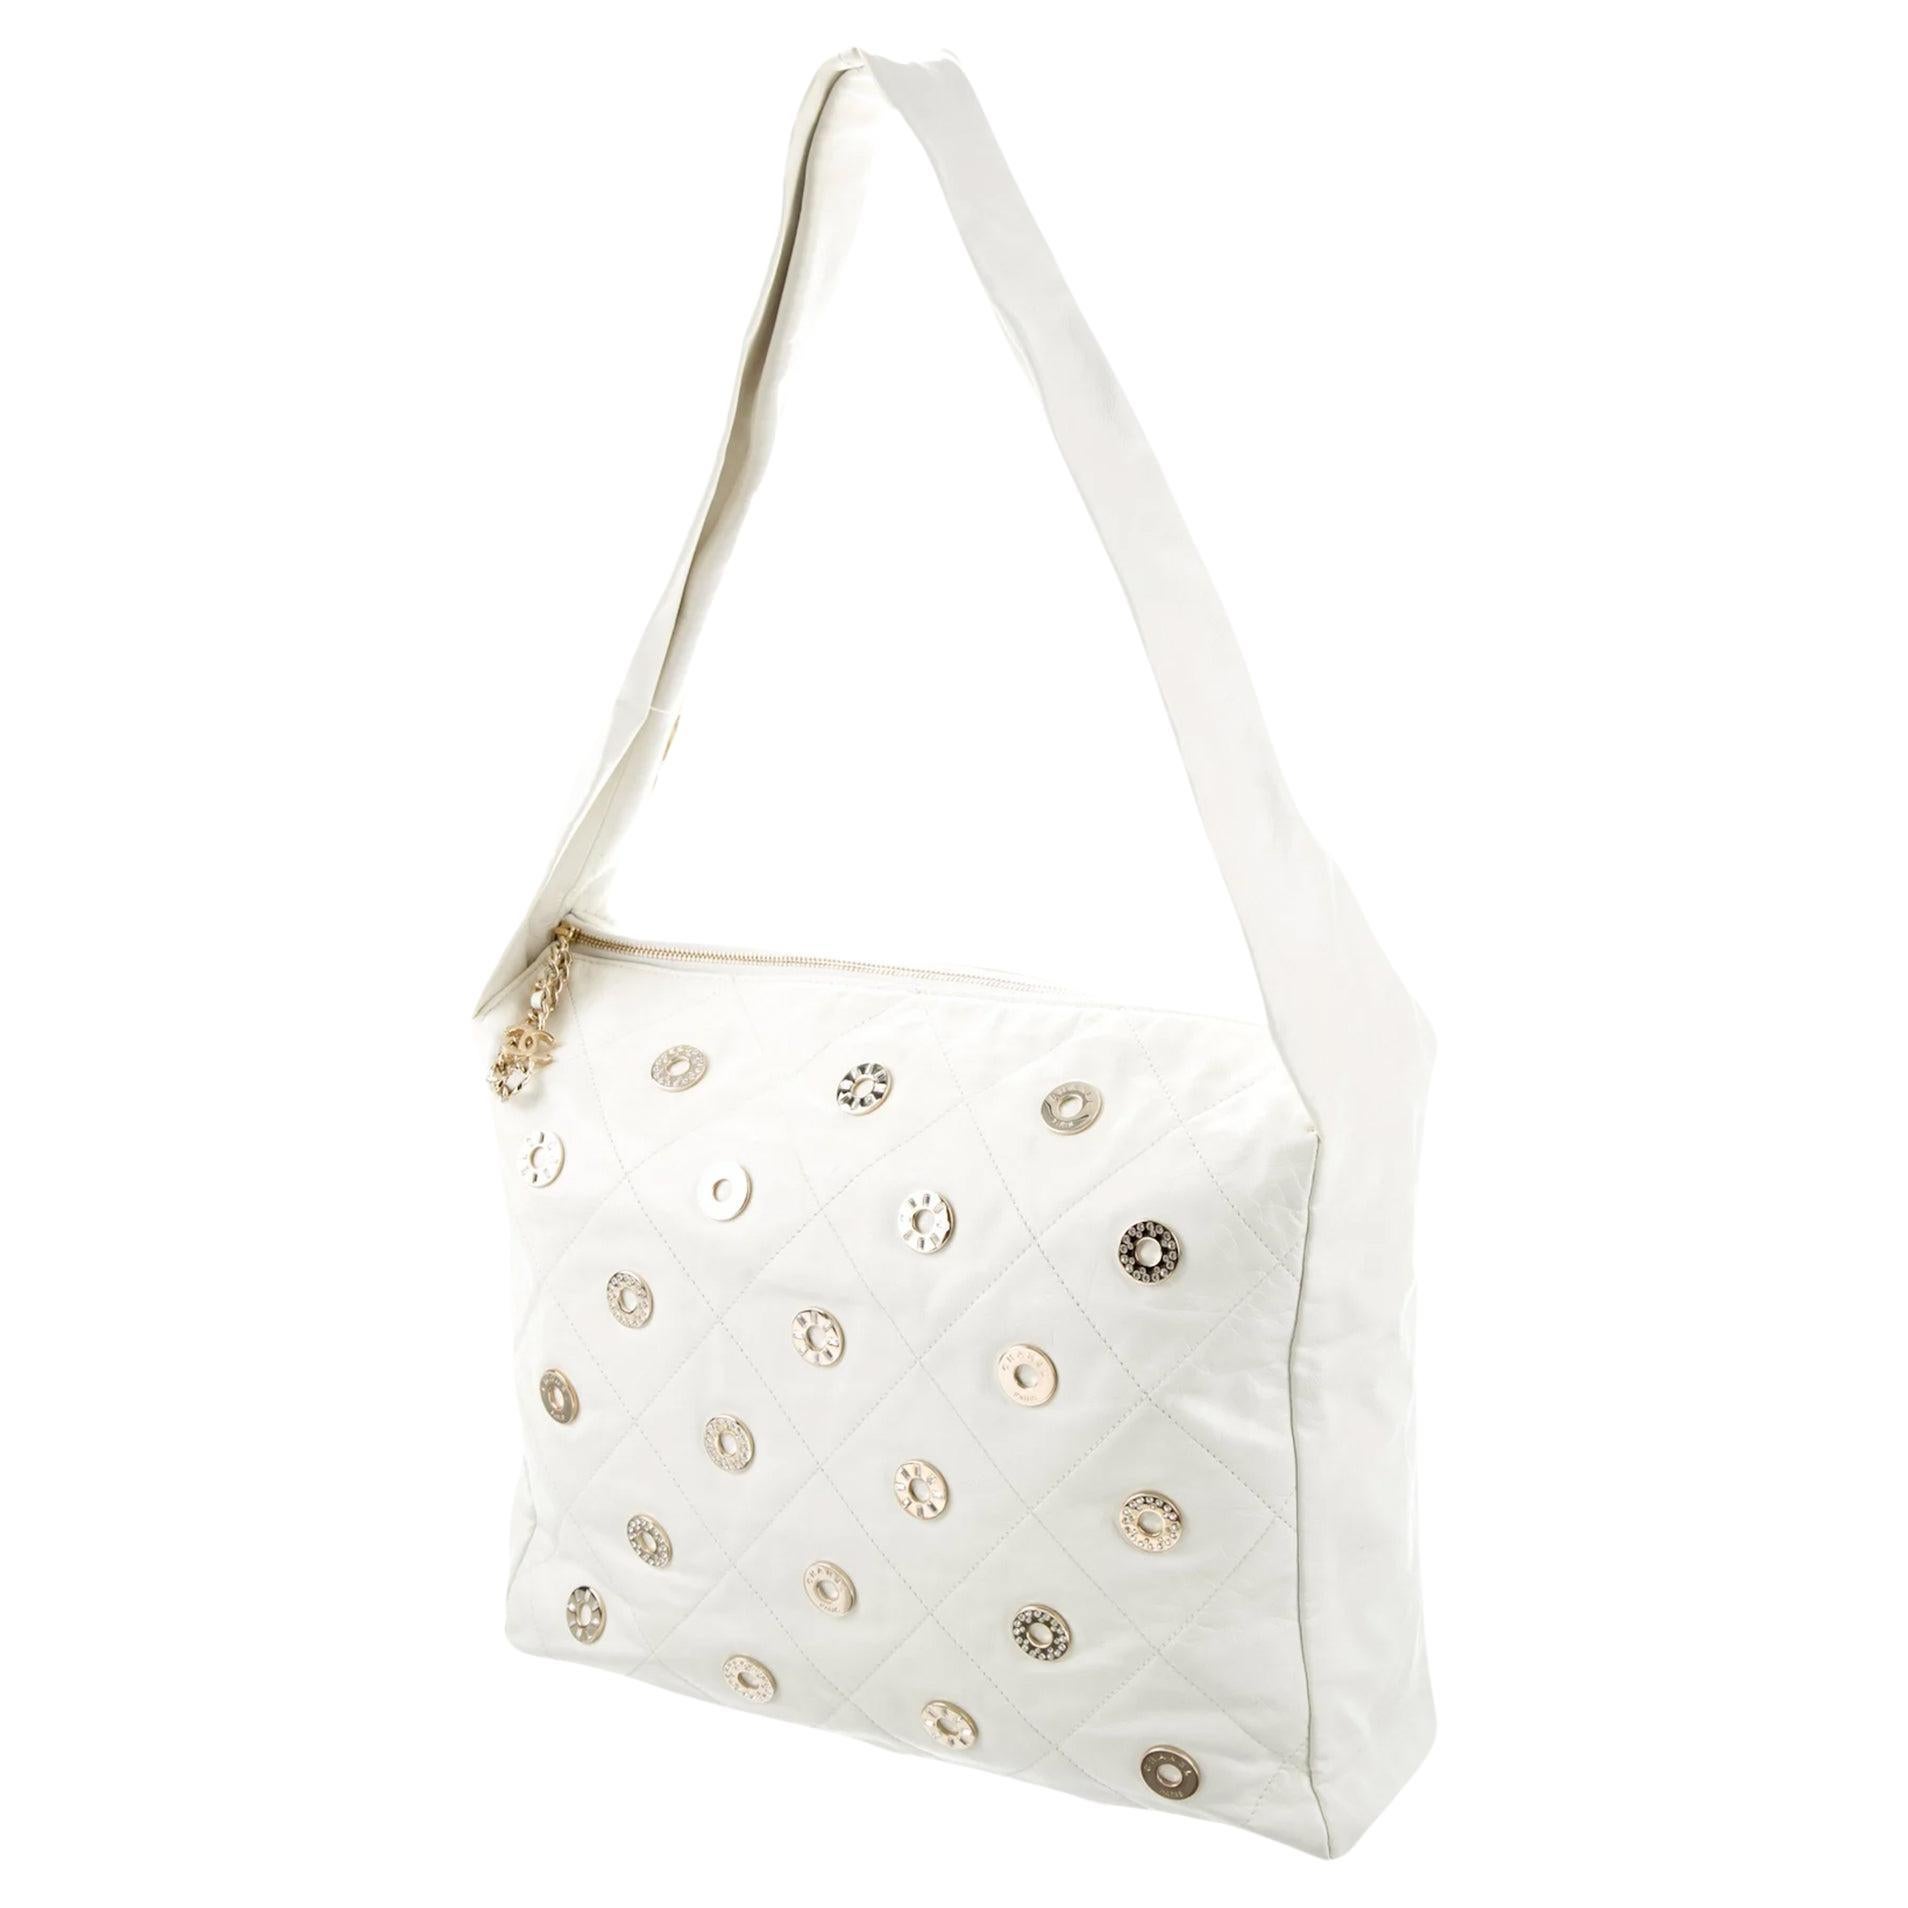 Chanel Rare Vintage 22 White Quilted Swarovski CharmShoulder Hobo Tote Bag For Sale